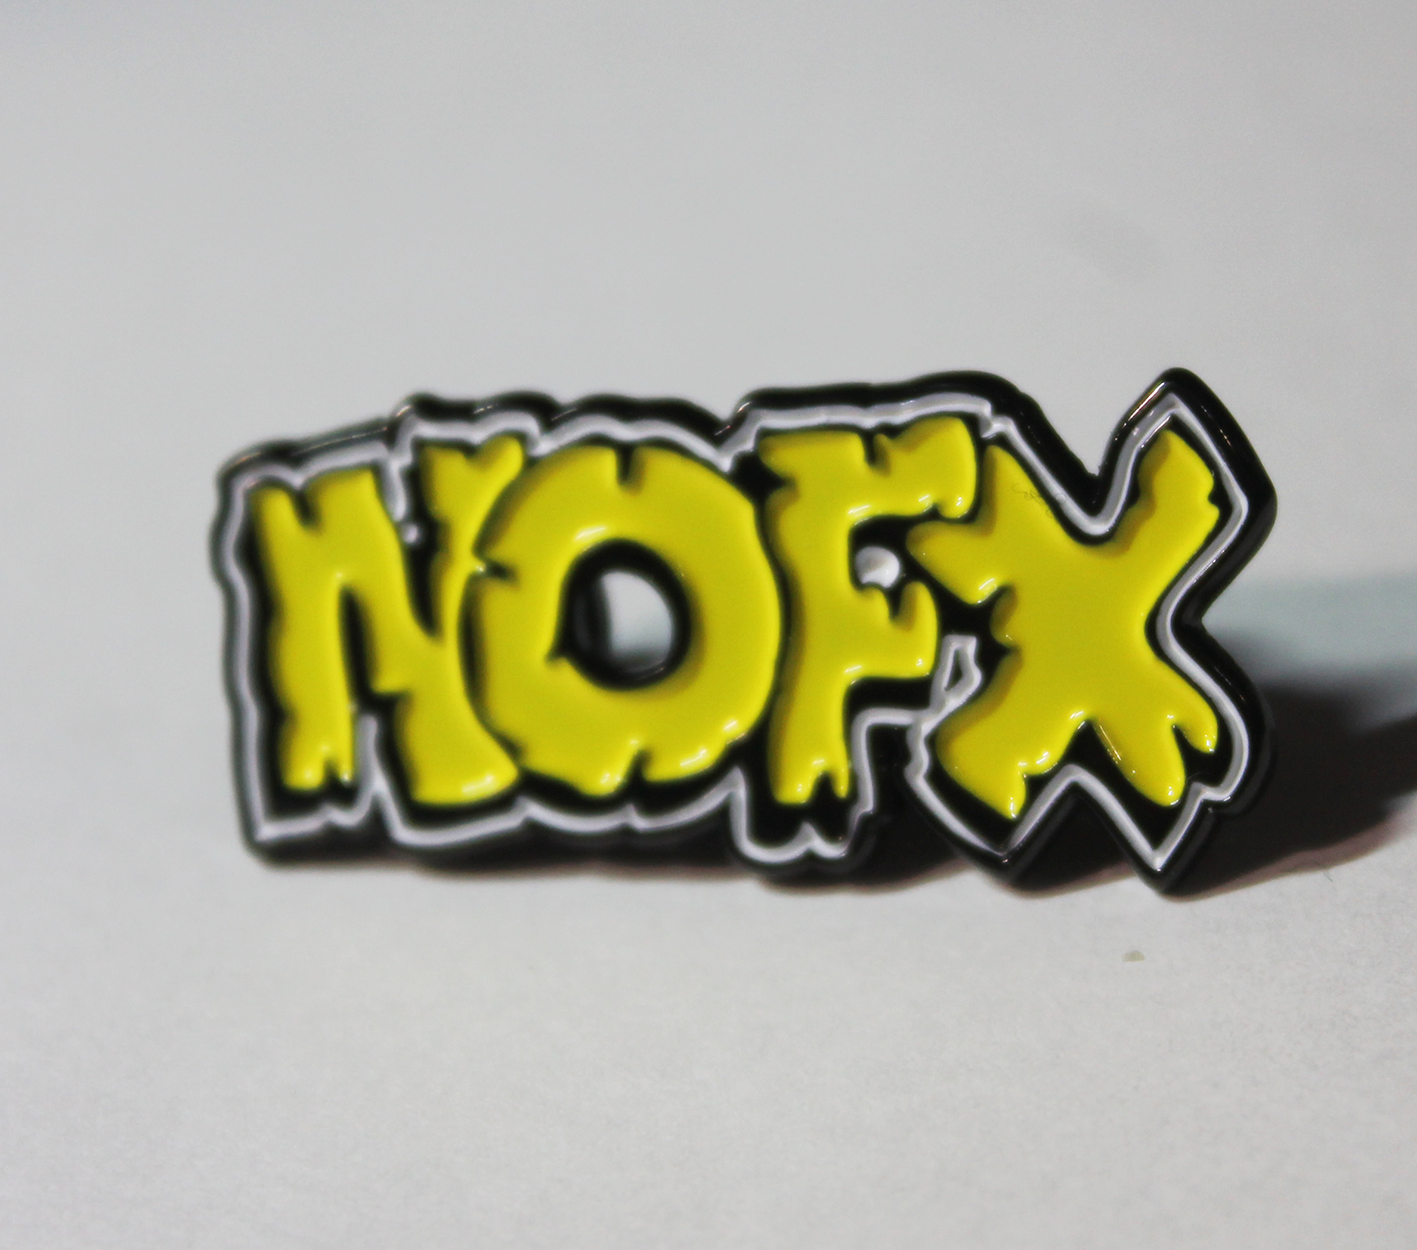 NOFX (yellow) 35mm